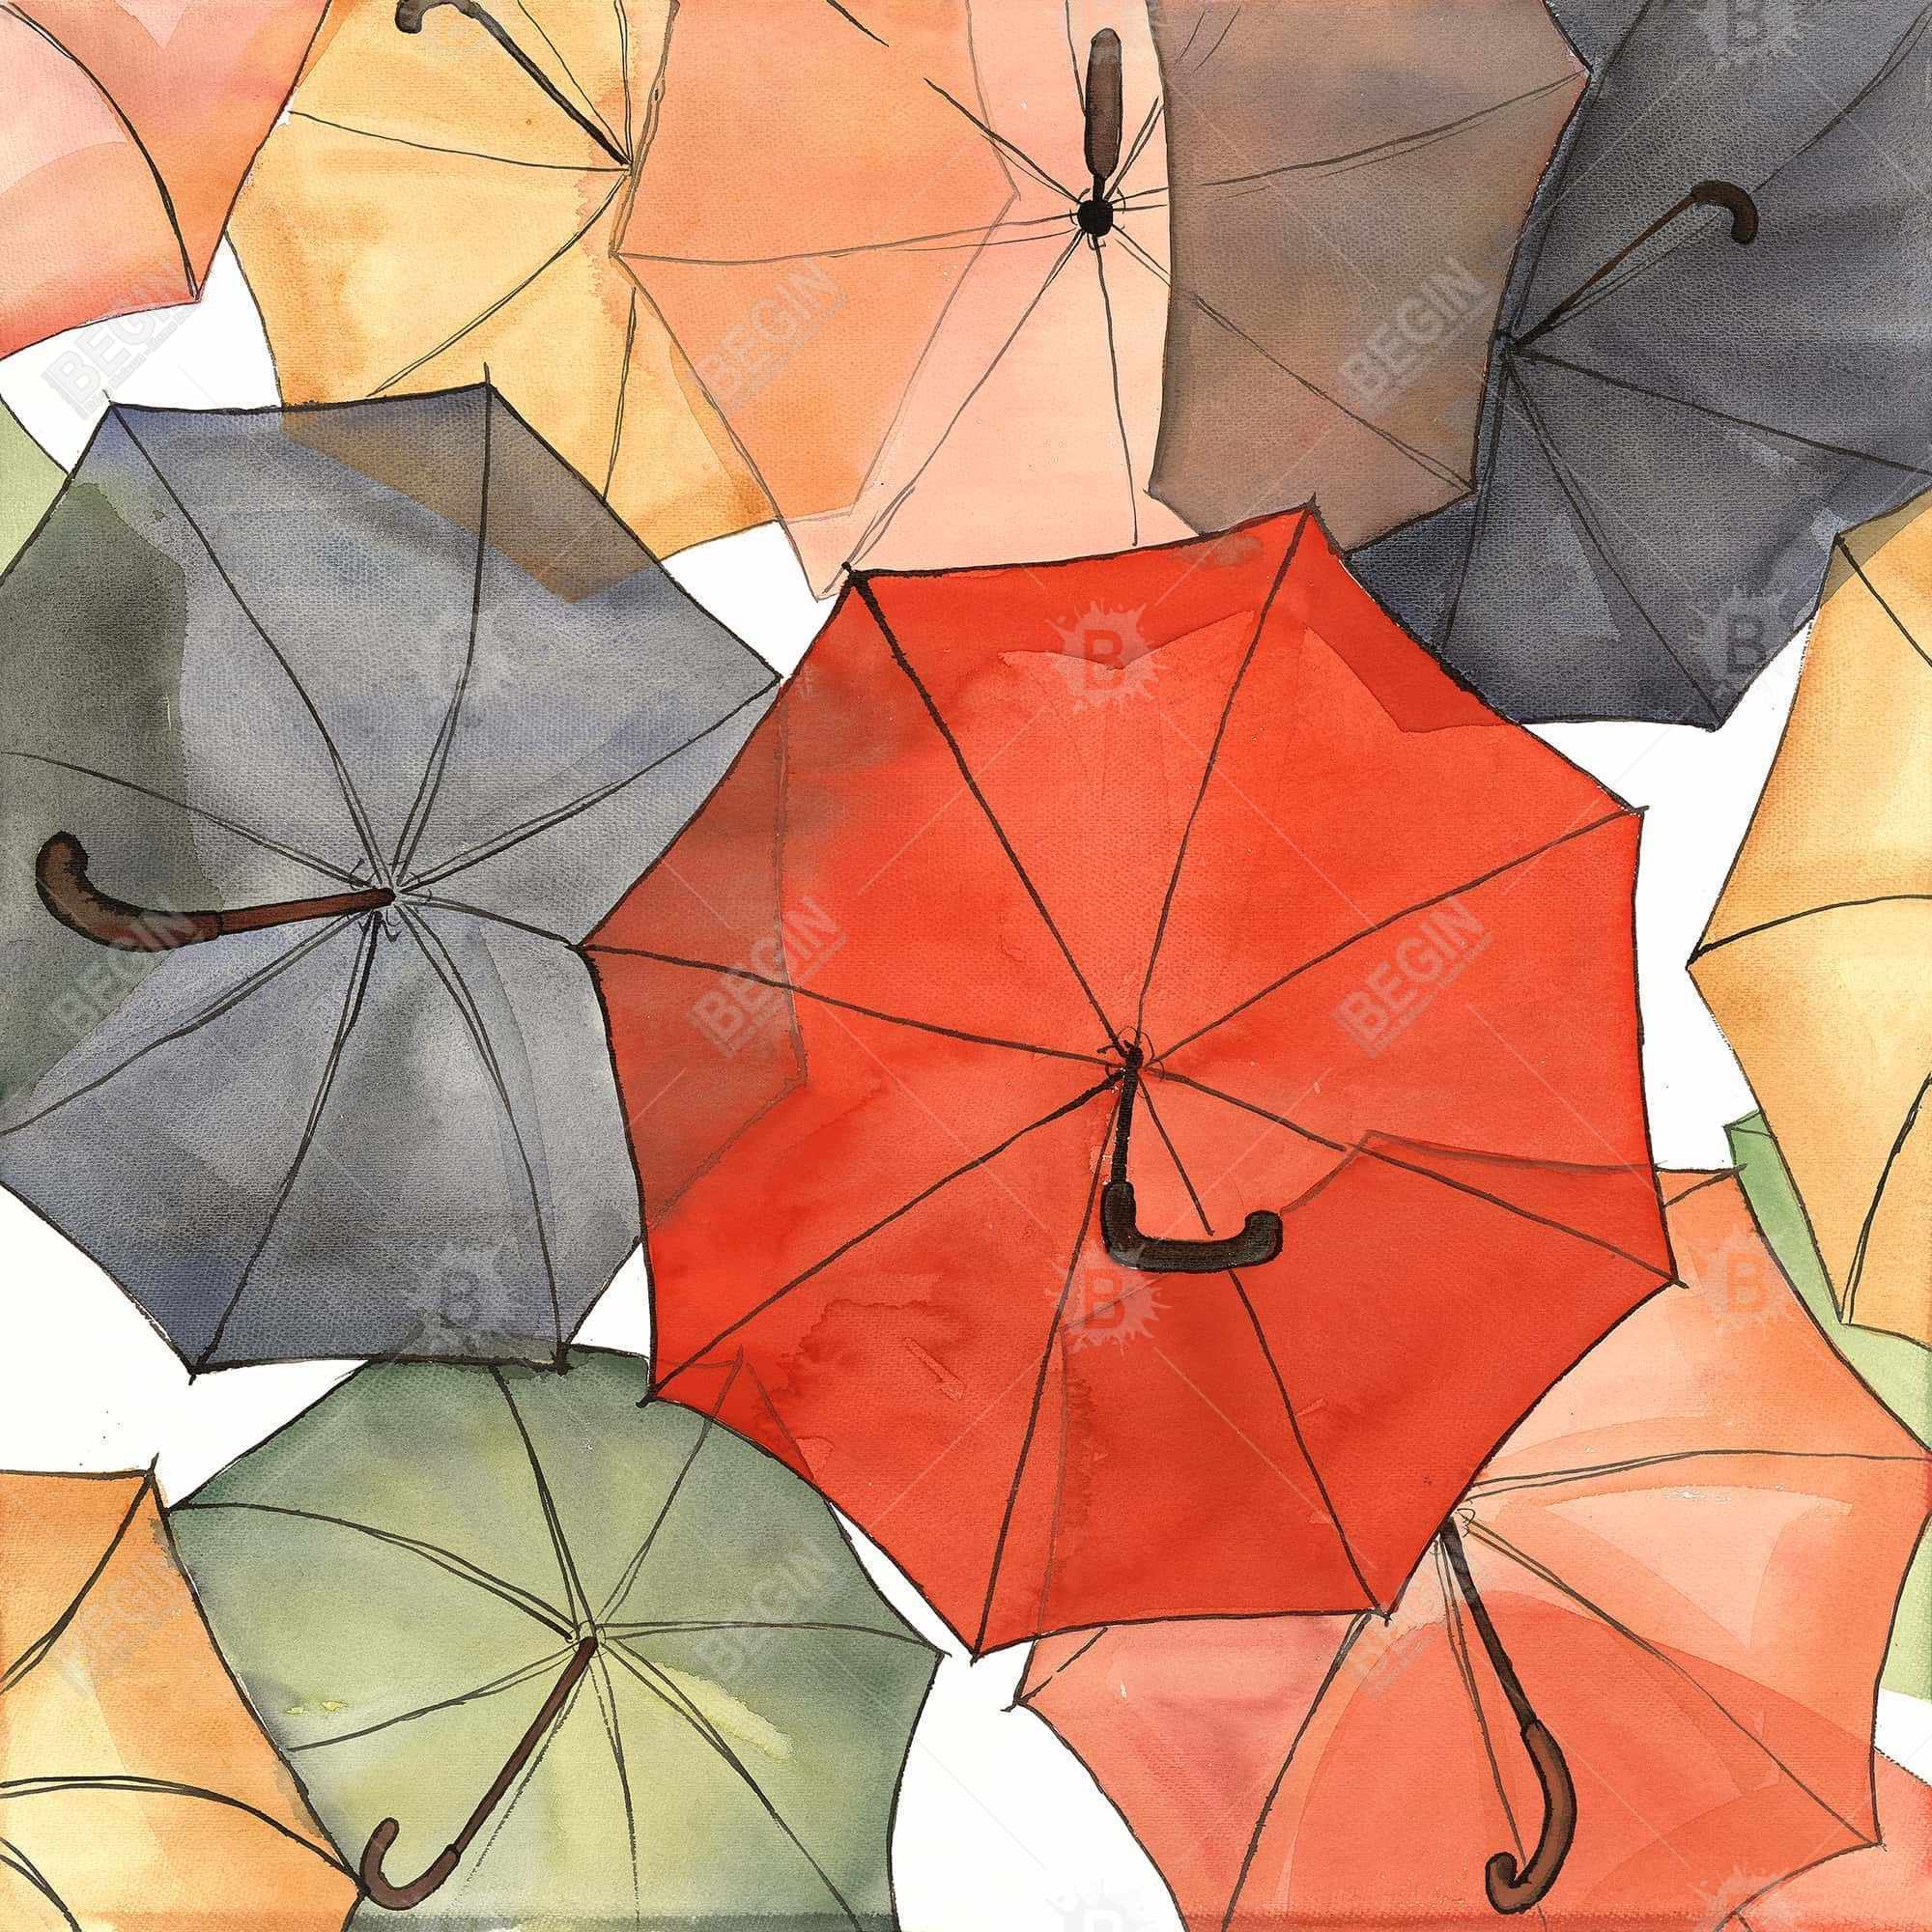 Les parapluies du petit champlain